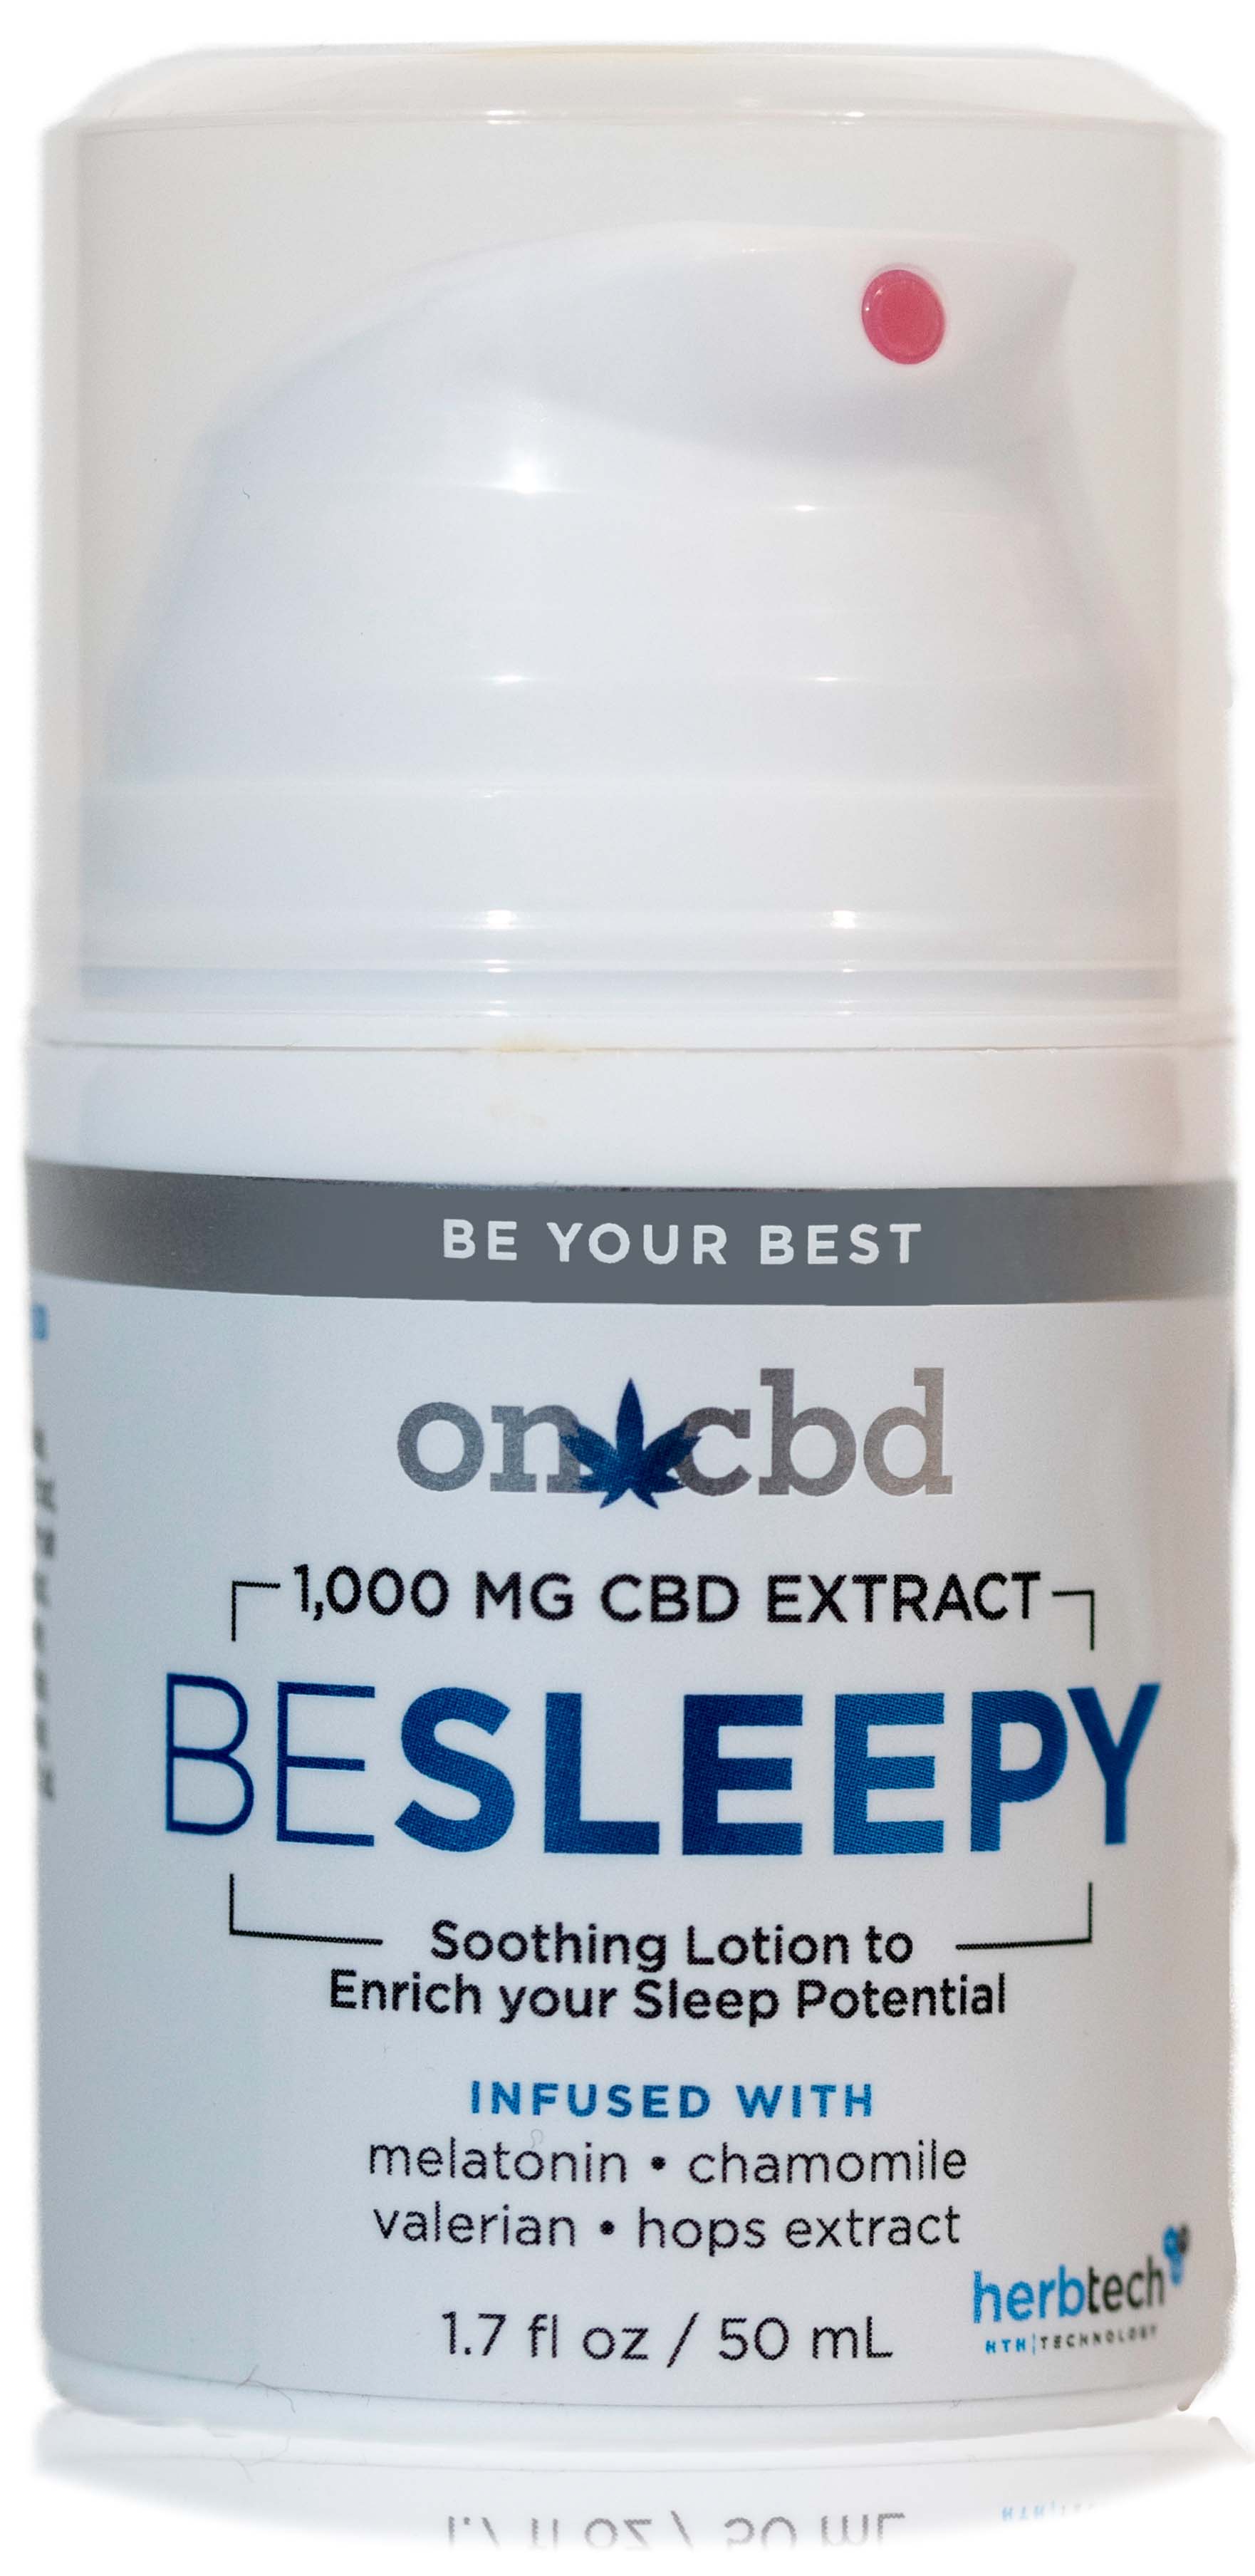 HerbTech Pharma - On CBD: Be Sleepy Herb Tech